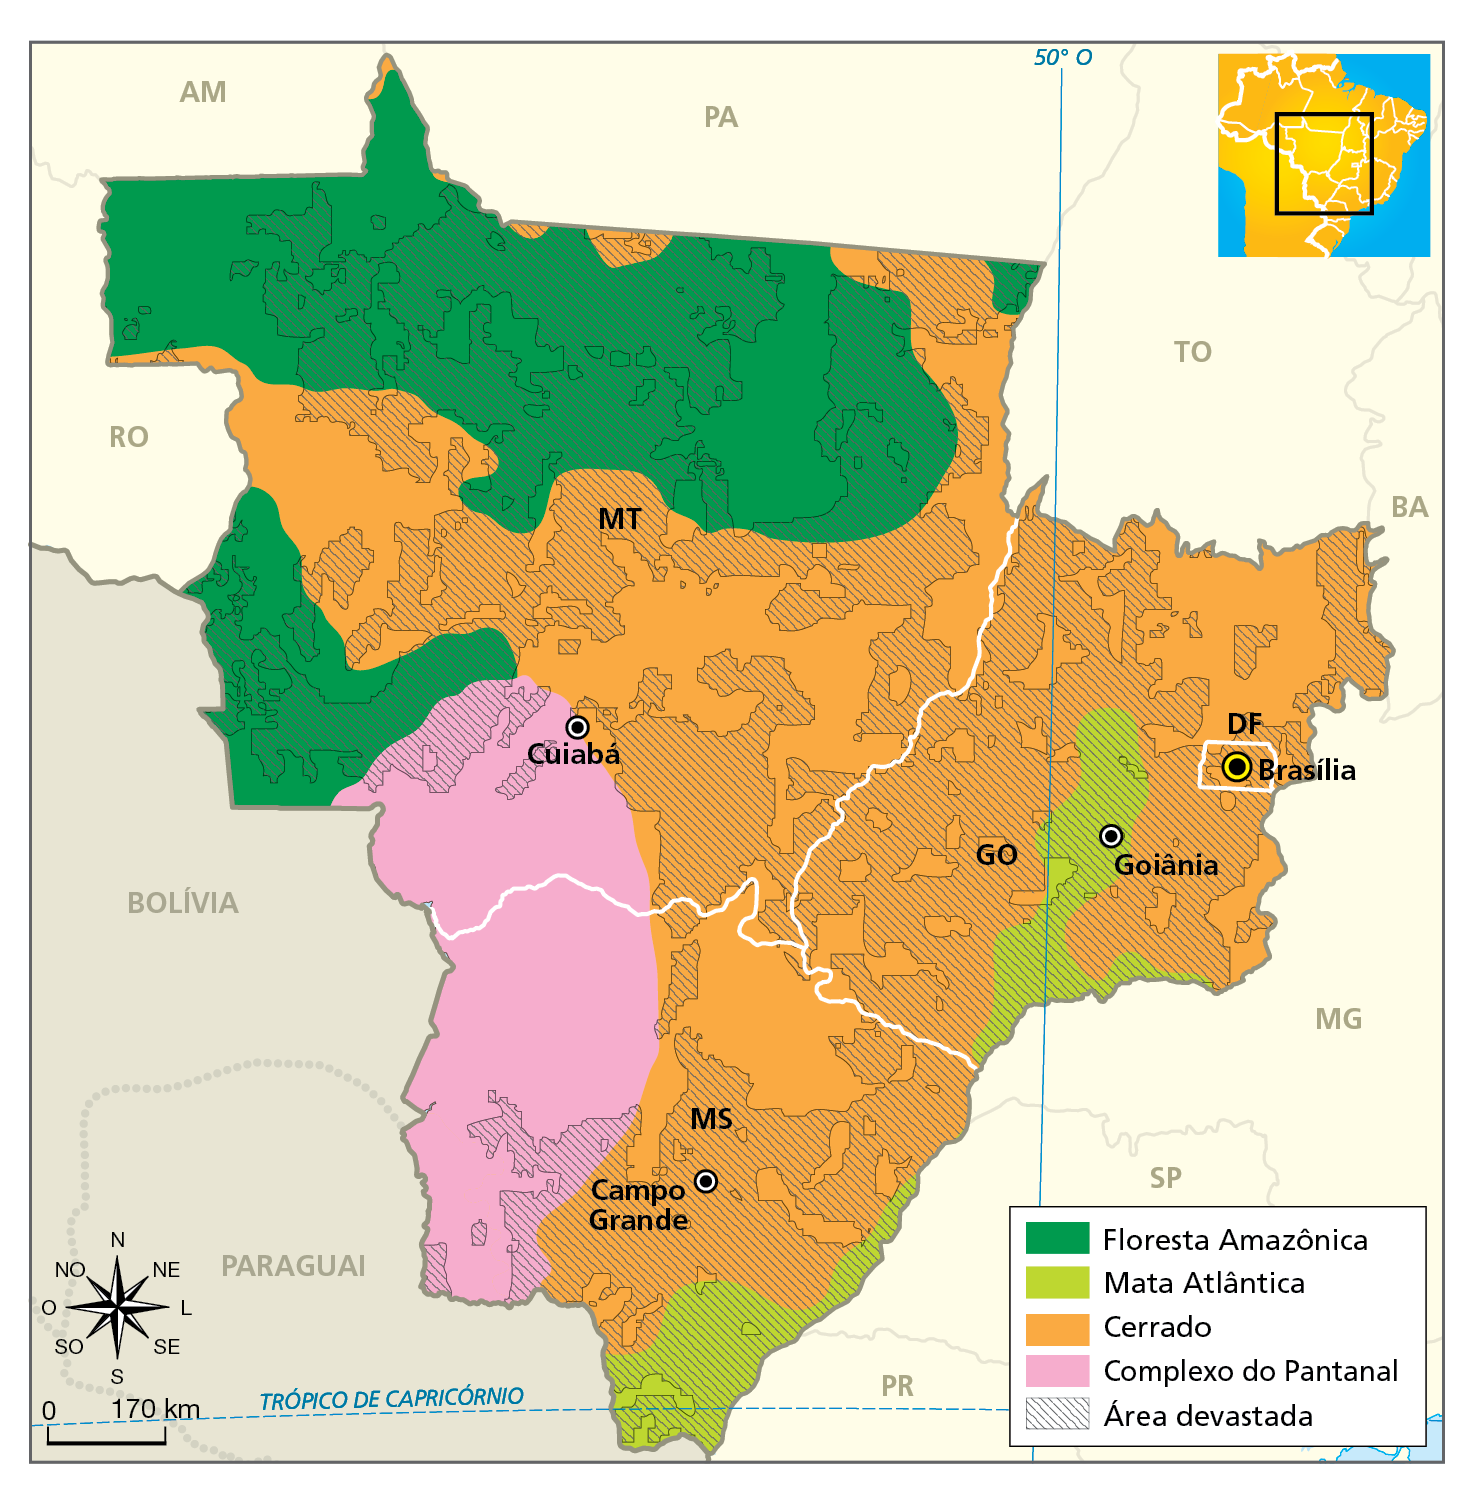 Mapa. Região Centro-Oeste: vegetação natural e devastação. 
Mapa com destaque para a Região Centro Oeste e a distribuição dos tipos de vegetação natural e de áreas devastadas nas unidades da federação que a compõem. Cada tipo de vegetação é representado por uma cor e as áreas devastadas estão hachuradas.
Floresta Amazônica, em verde escuro: predomina na porção norte e oeste do estado de Mato Grosso. 
Mata Atlântica, na cor verde claro: faixa estreita no centro e na porção sudeste do estado de Goiás e em quase toda a extensão da área próxima à divisa de Mato Grosso do Sul com os estados do Paraná e São Paulo.  
Cerrado, na cor laranja: predomina em todo o Distrito Federal, em quase todo o estado de Goiás, porção central, leste e parte do sul de Mato Grosso e porção central e nordeste do Mato Grosso do Sul. 
Complexo do Pantanal, na cor rosa: predomina na porção oeste e noroeste do Mato Grosso do Sul e na porção sudoeste de Mato Grosso, chegando a Cuiabá. 
Área devastada: maior parte do estado de Goiás, do Distrito Federal, do estado de Mato Grosso e da porção centro e leste do Mato Grosso do Sul. No Complexo do Pantanal há poucas áreas devastadas. 
No canto inferior esquerdo, rosa dos ventos e escala de 0 a 170 quilômetros.